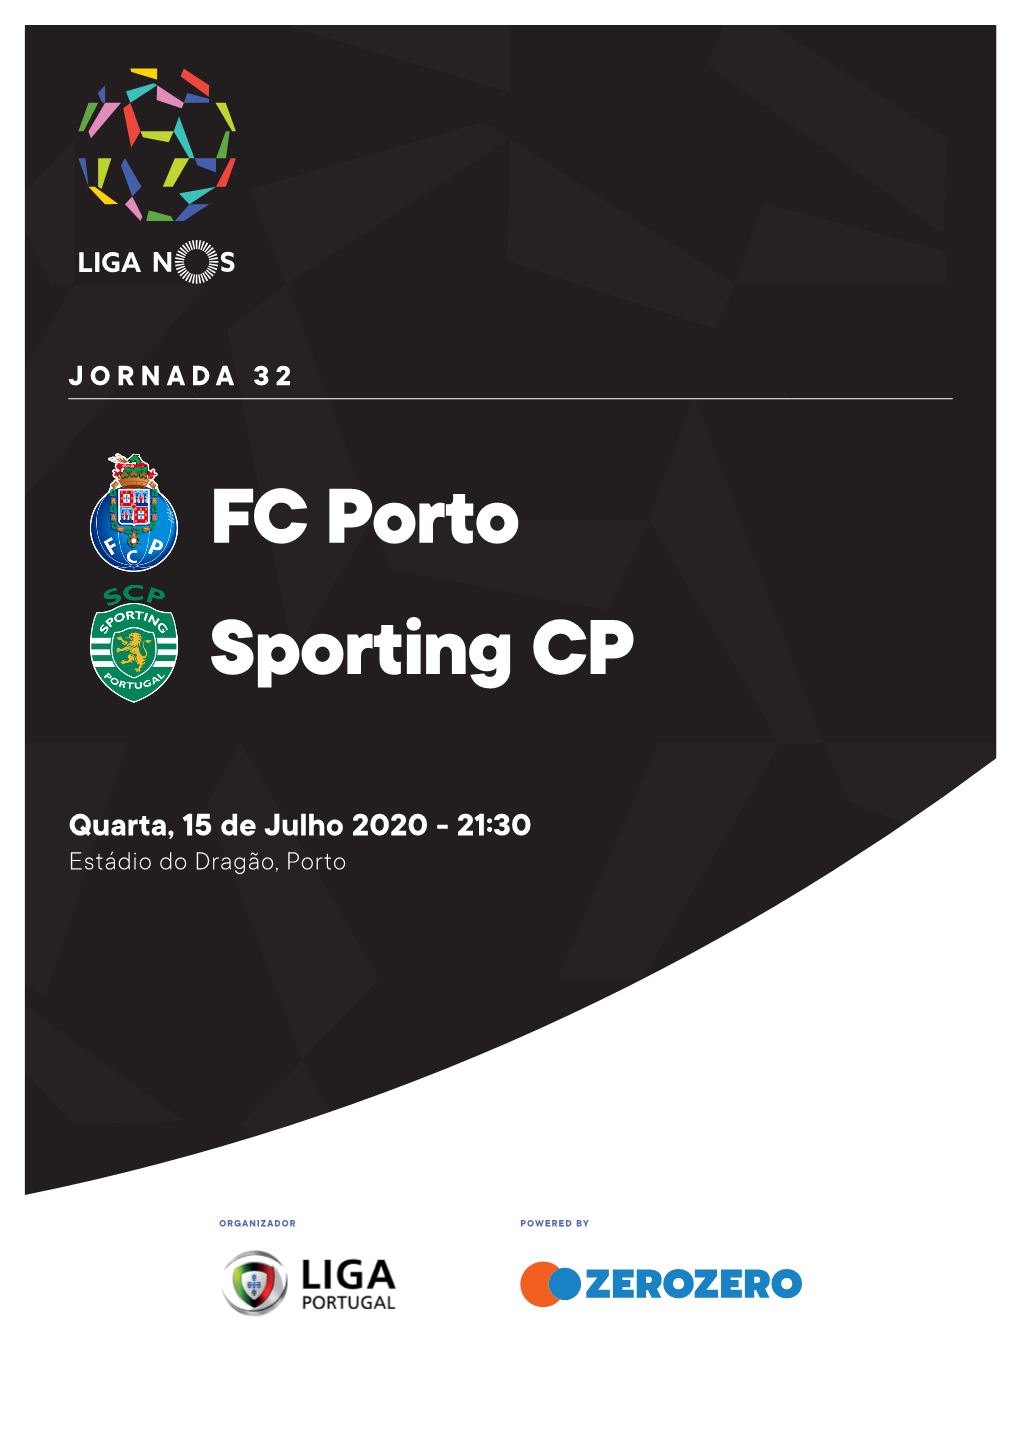 FC Porto Sporting CP